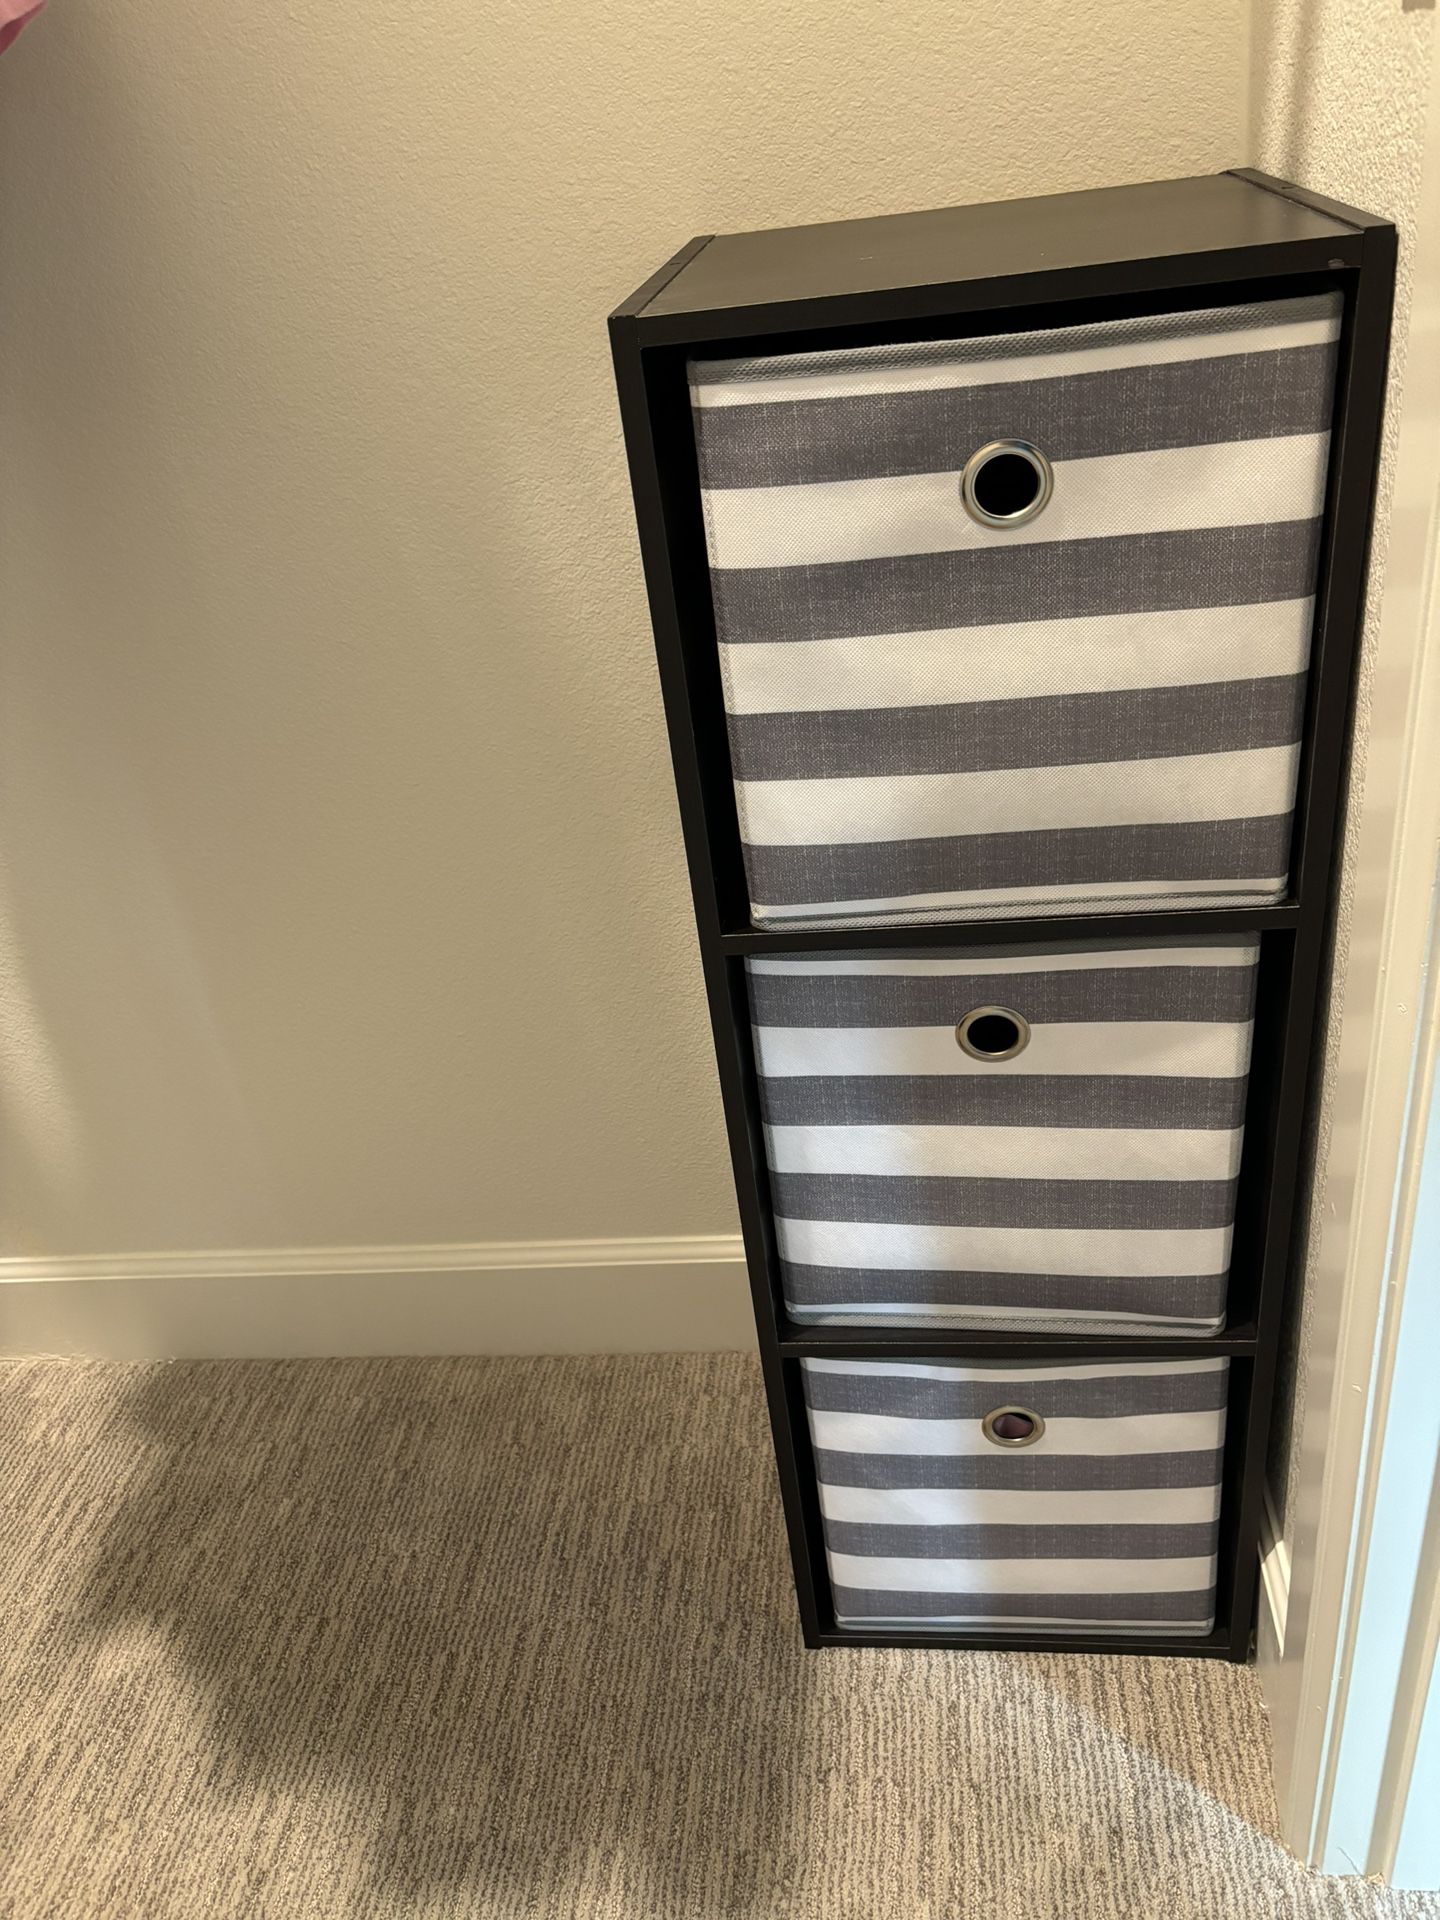 Cube Organizer Shelf With Storage Bins Included